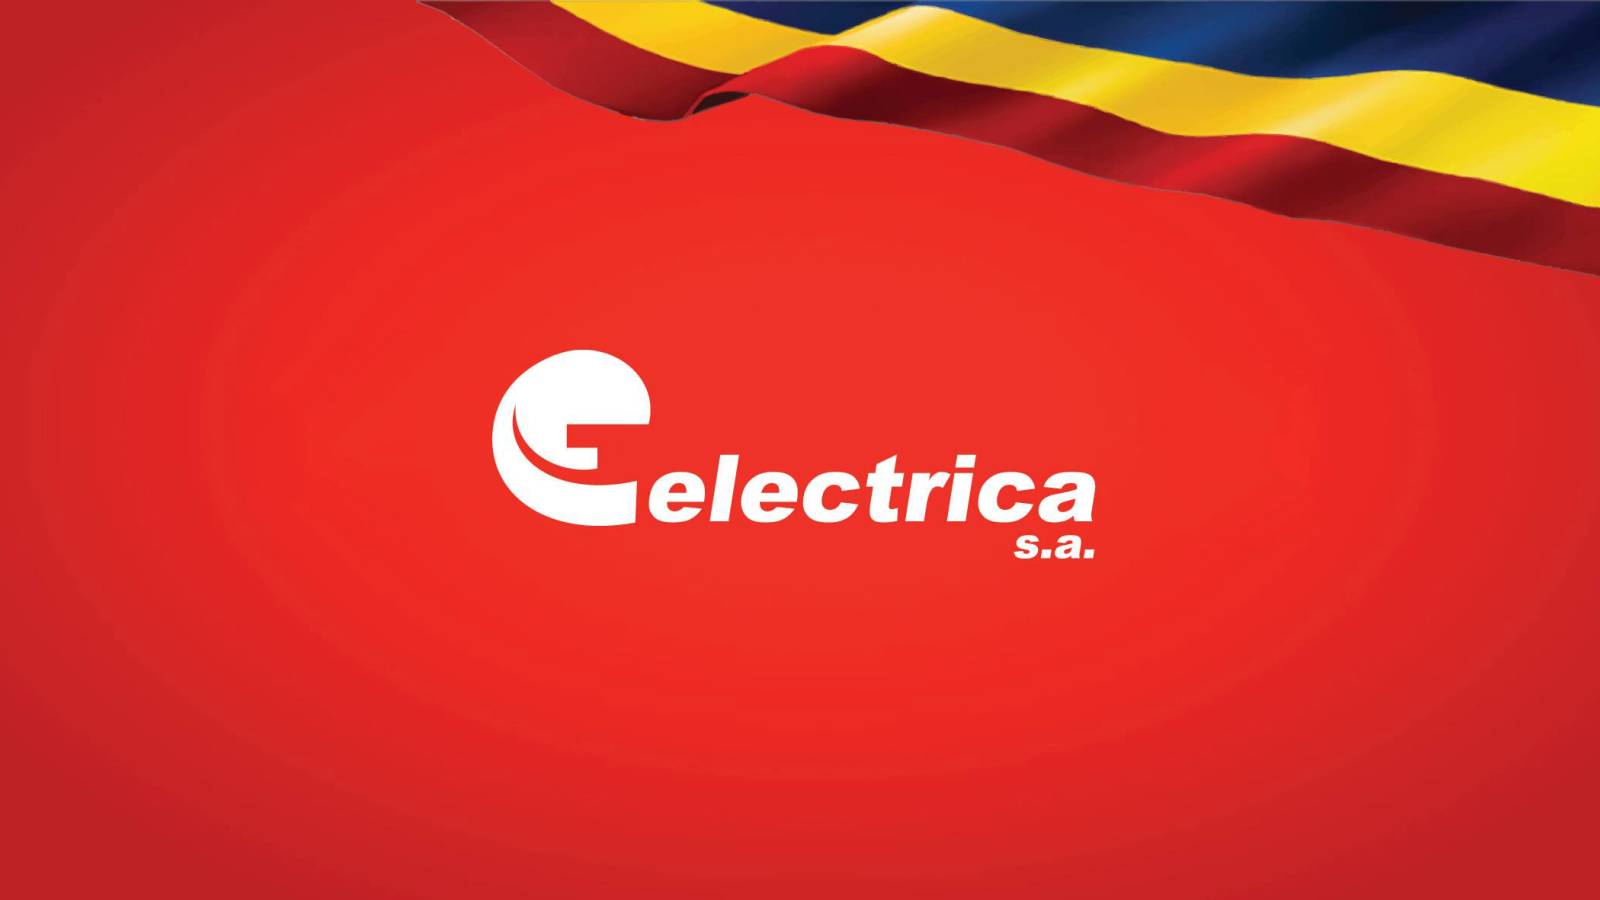 Aankondiging ELECTRICA Formeel LAATSTE MOMENT Aandacht MILJOENEN Roemenen over het hele land